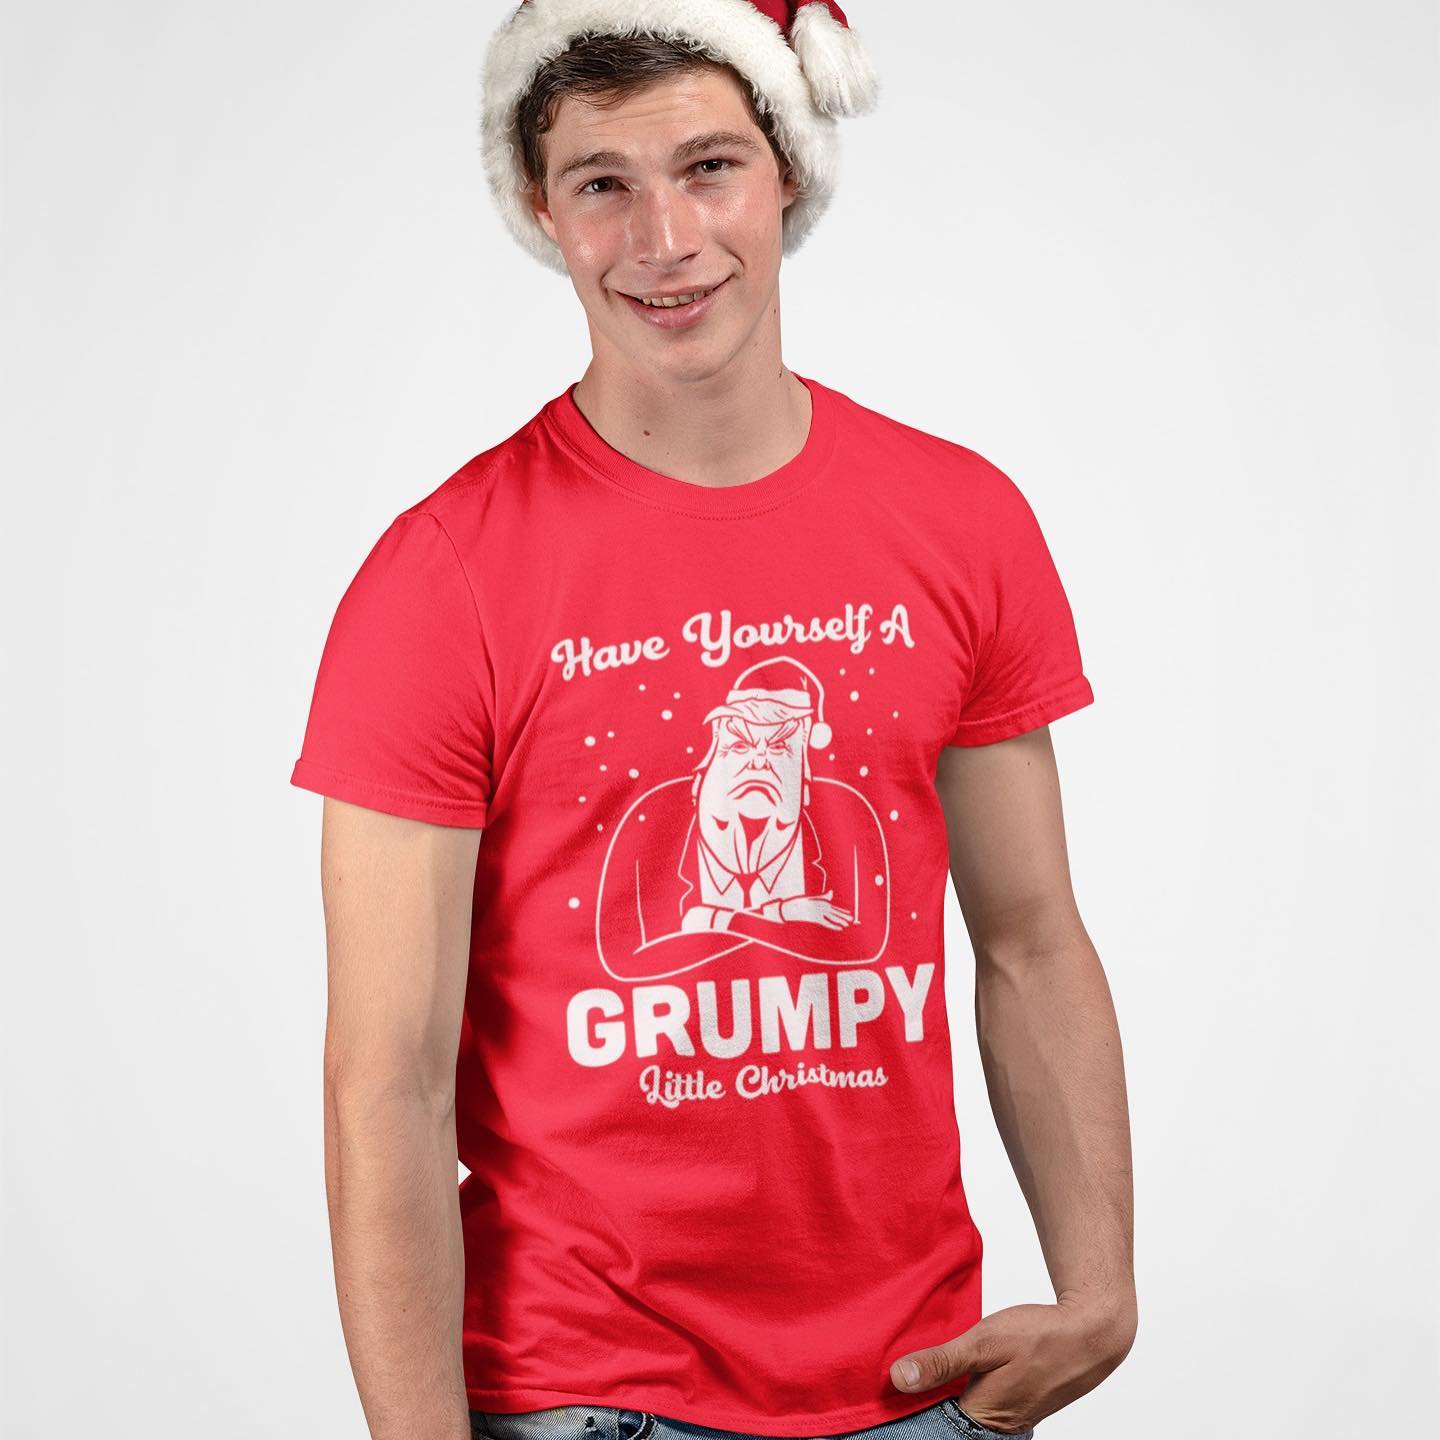 Have a very trumpy grumpy...